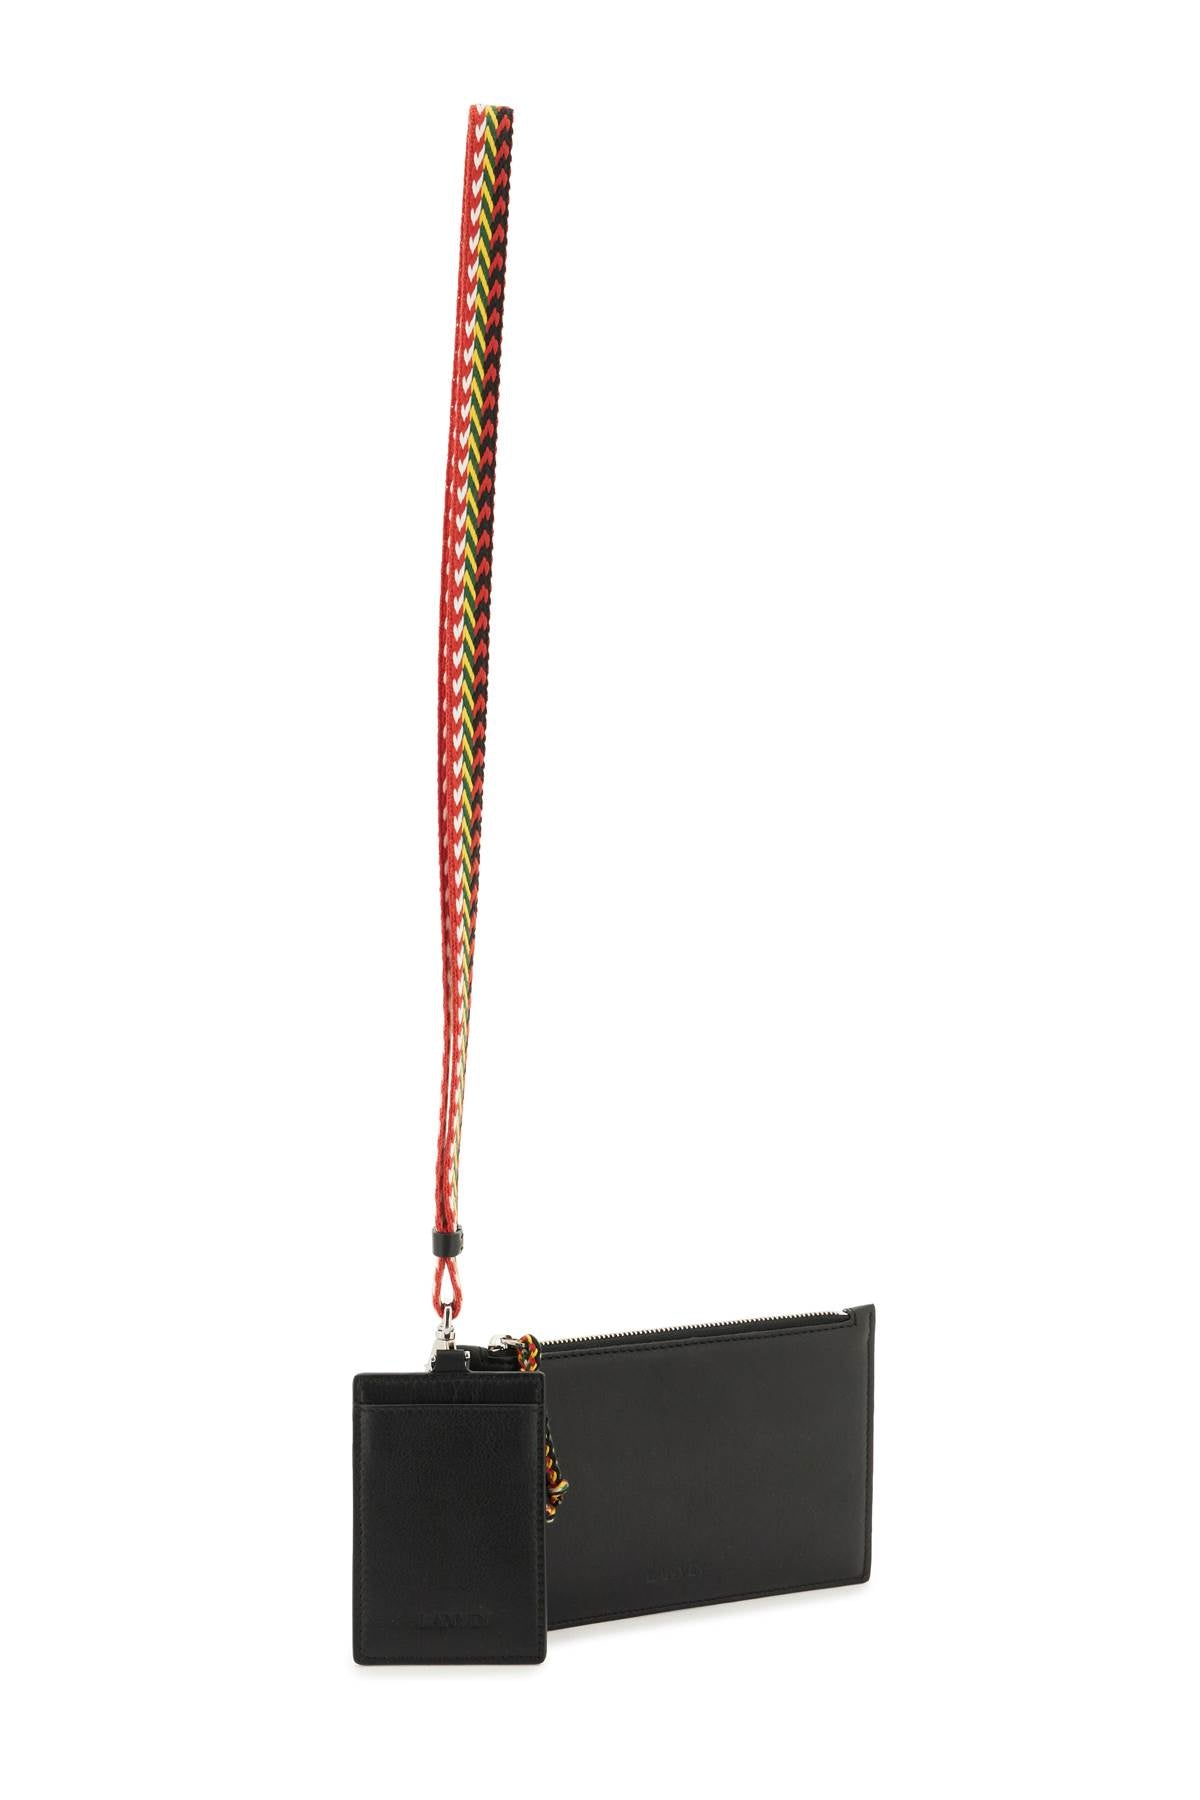 Lanvin Lanvin double pouch with strap